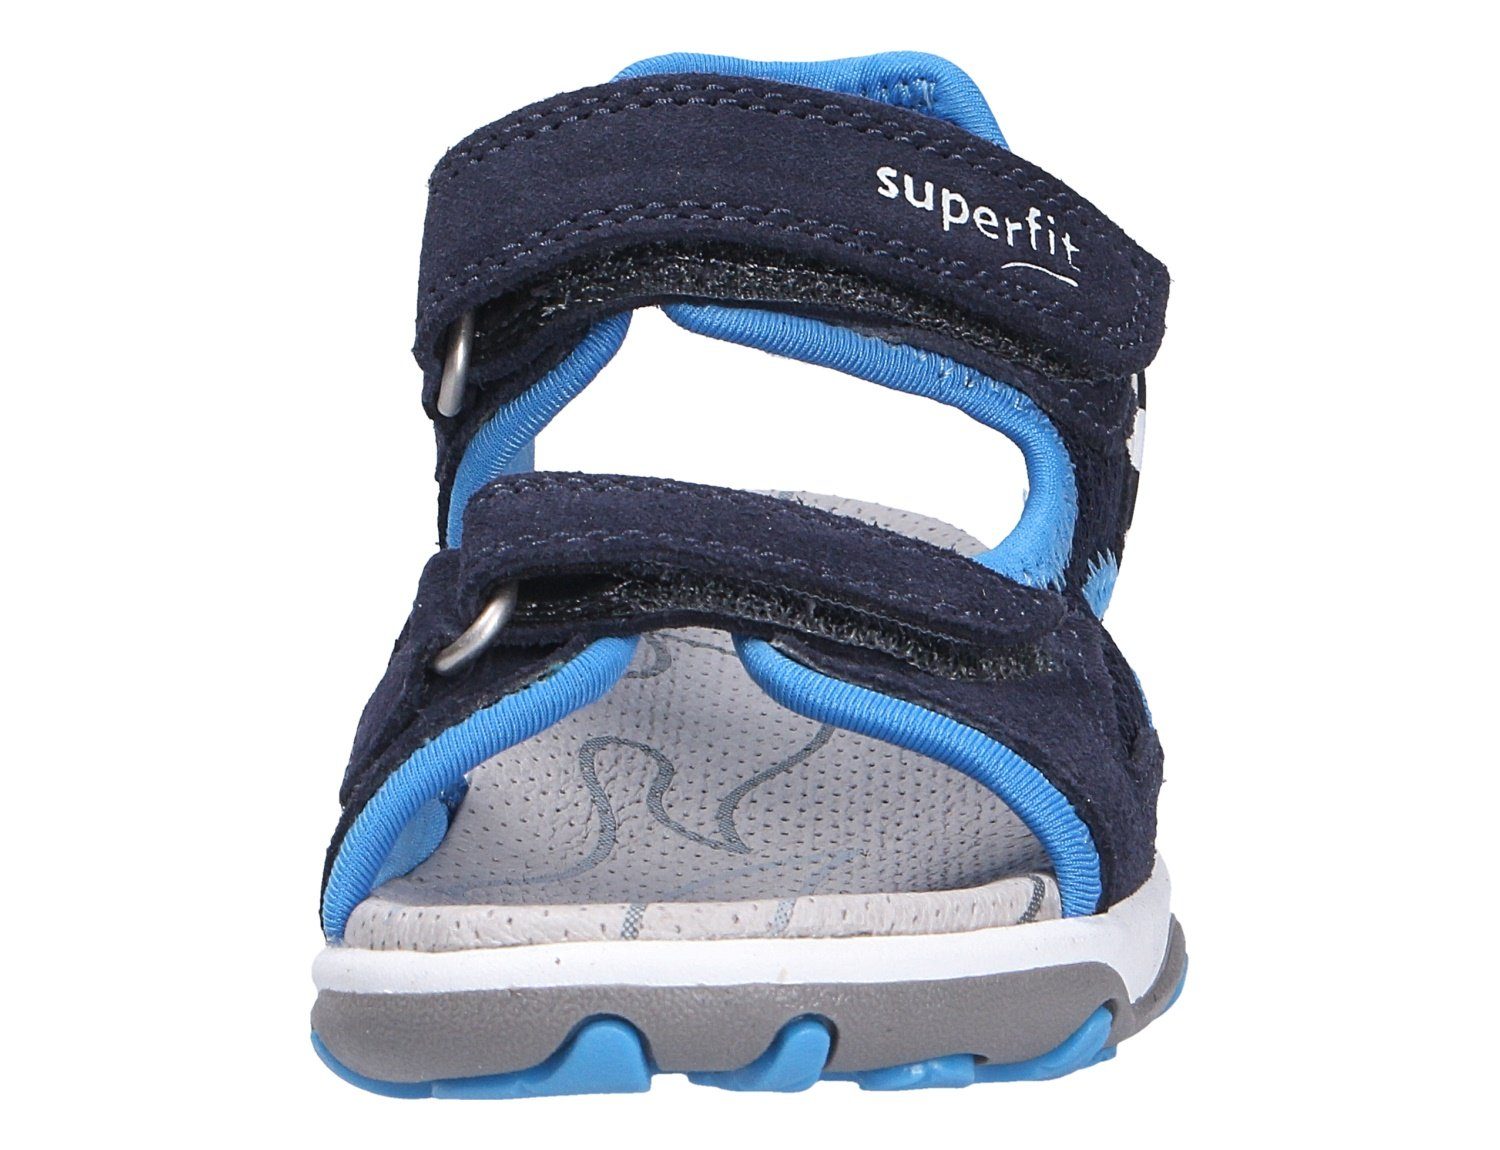 (20401812) Superfit Sandale Robuste BLAU/TÜRKIS Qualität